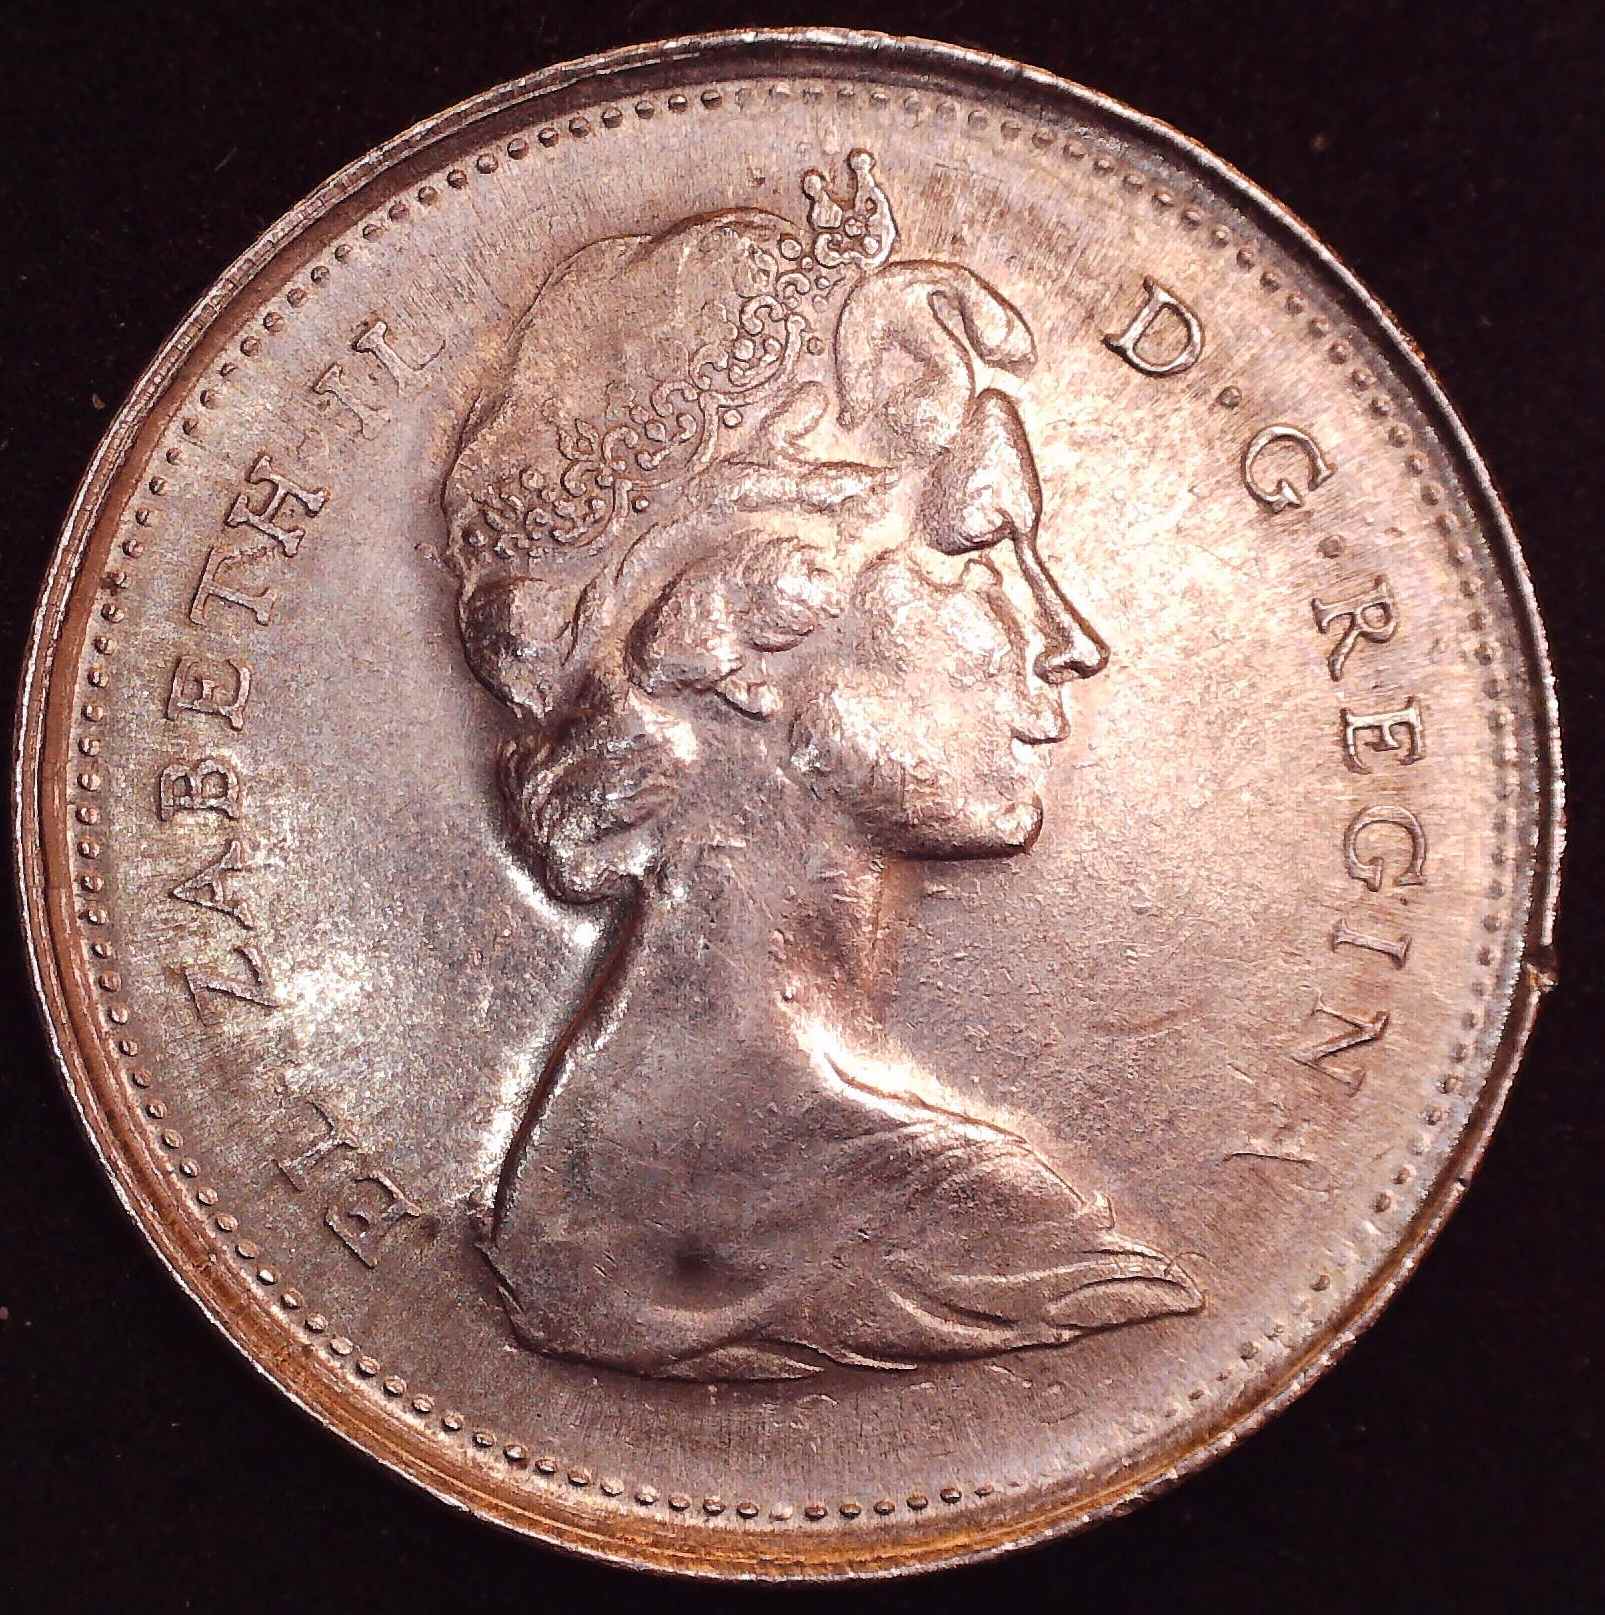 C_25c 1978 sur 5 cents 1975 - 5.jpg